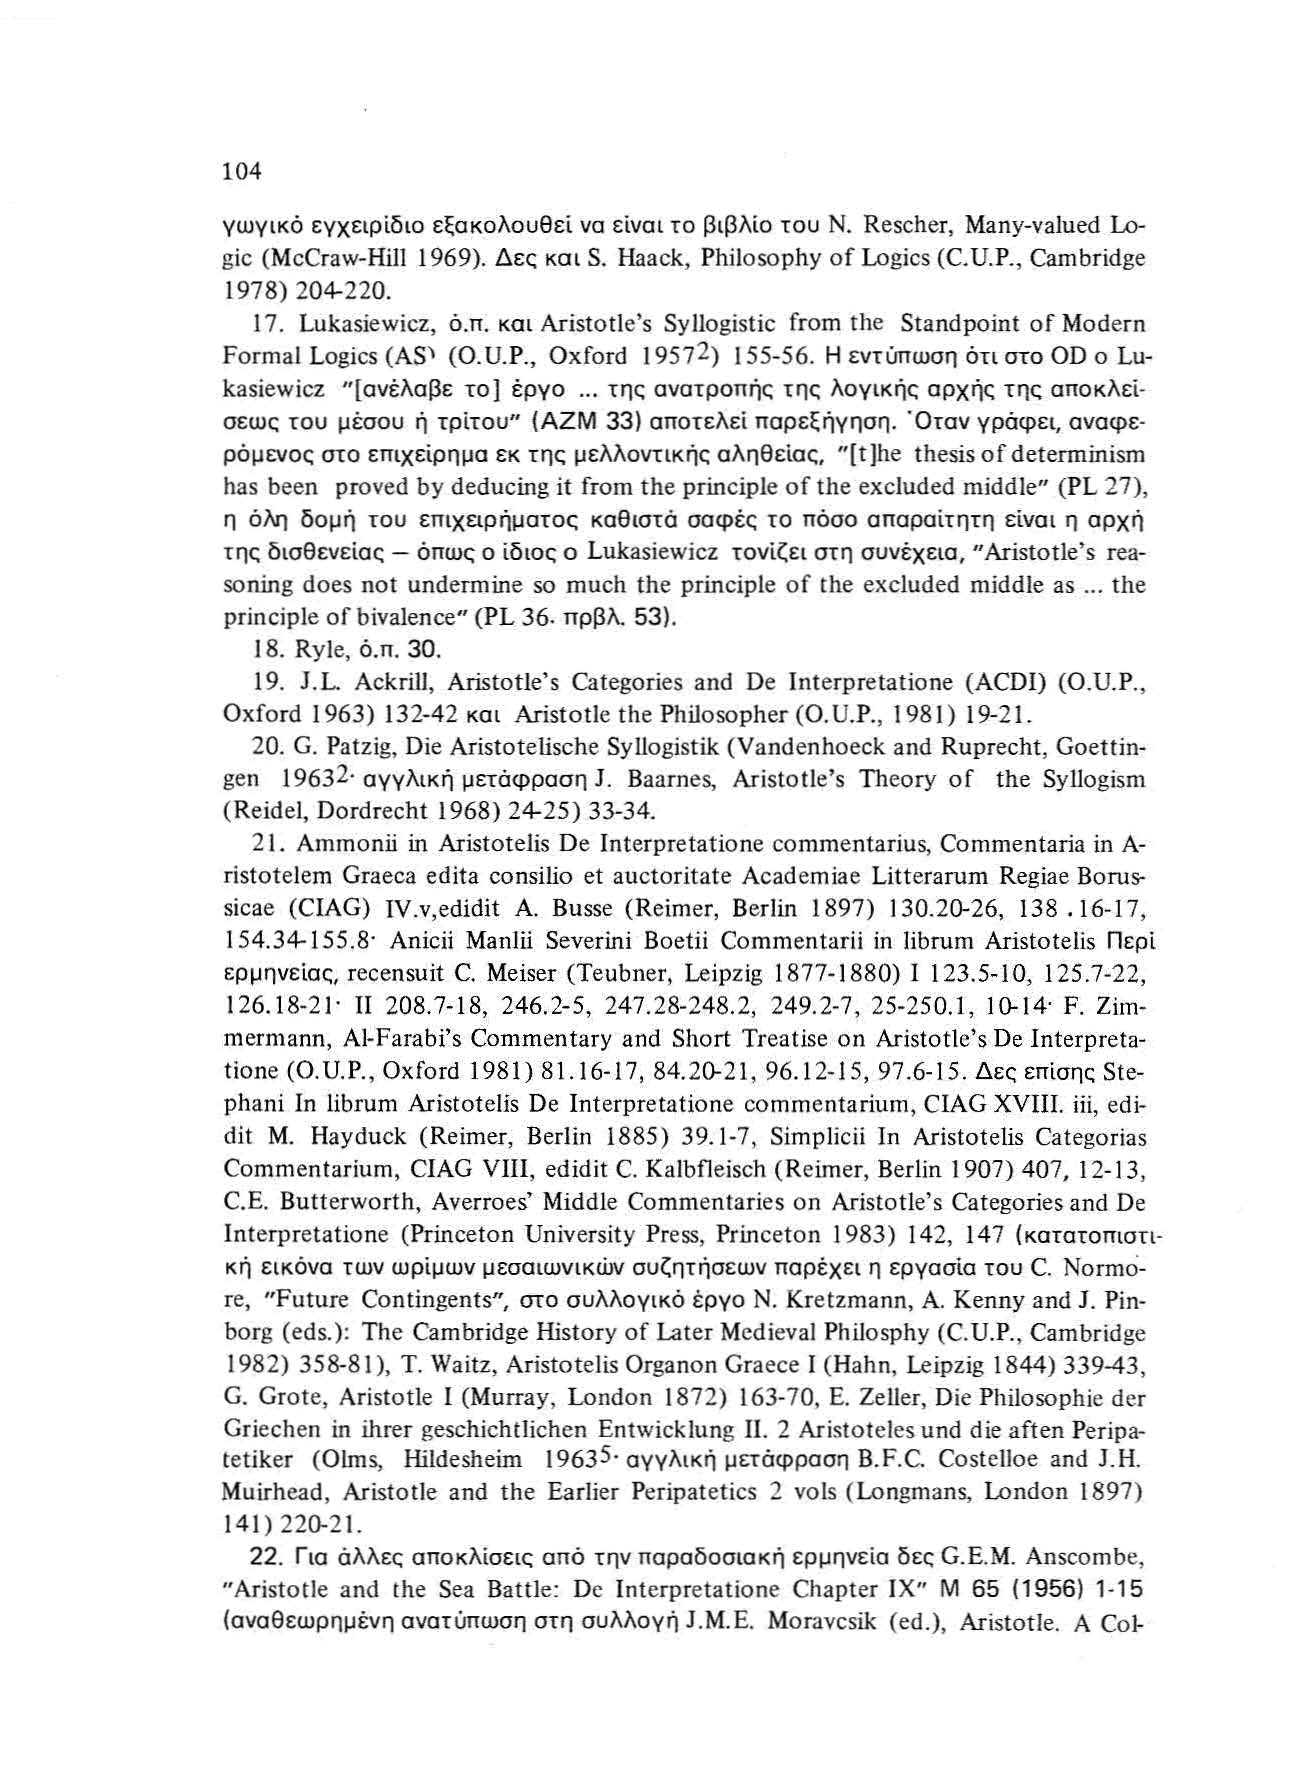 104 γωγικά ε γχειρίδιο εξακολουθεί να είνα ι το βιβ λίο τ ο υ Ν. Rescher, Many-valued 1..0 gic (McCra w-hill 1969). Δες και 5. Haack, Ph ilo sα ph y of Logics (C.u.P., Cambridge 1978) 204-220. 17.